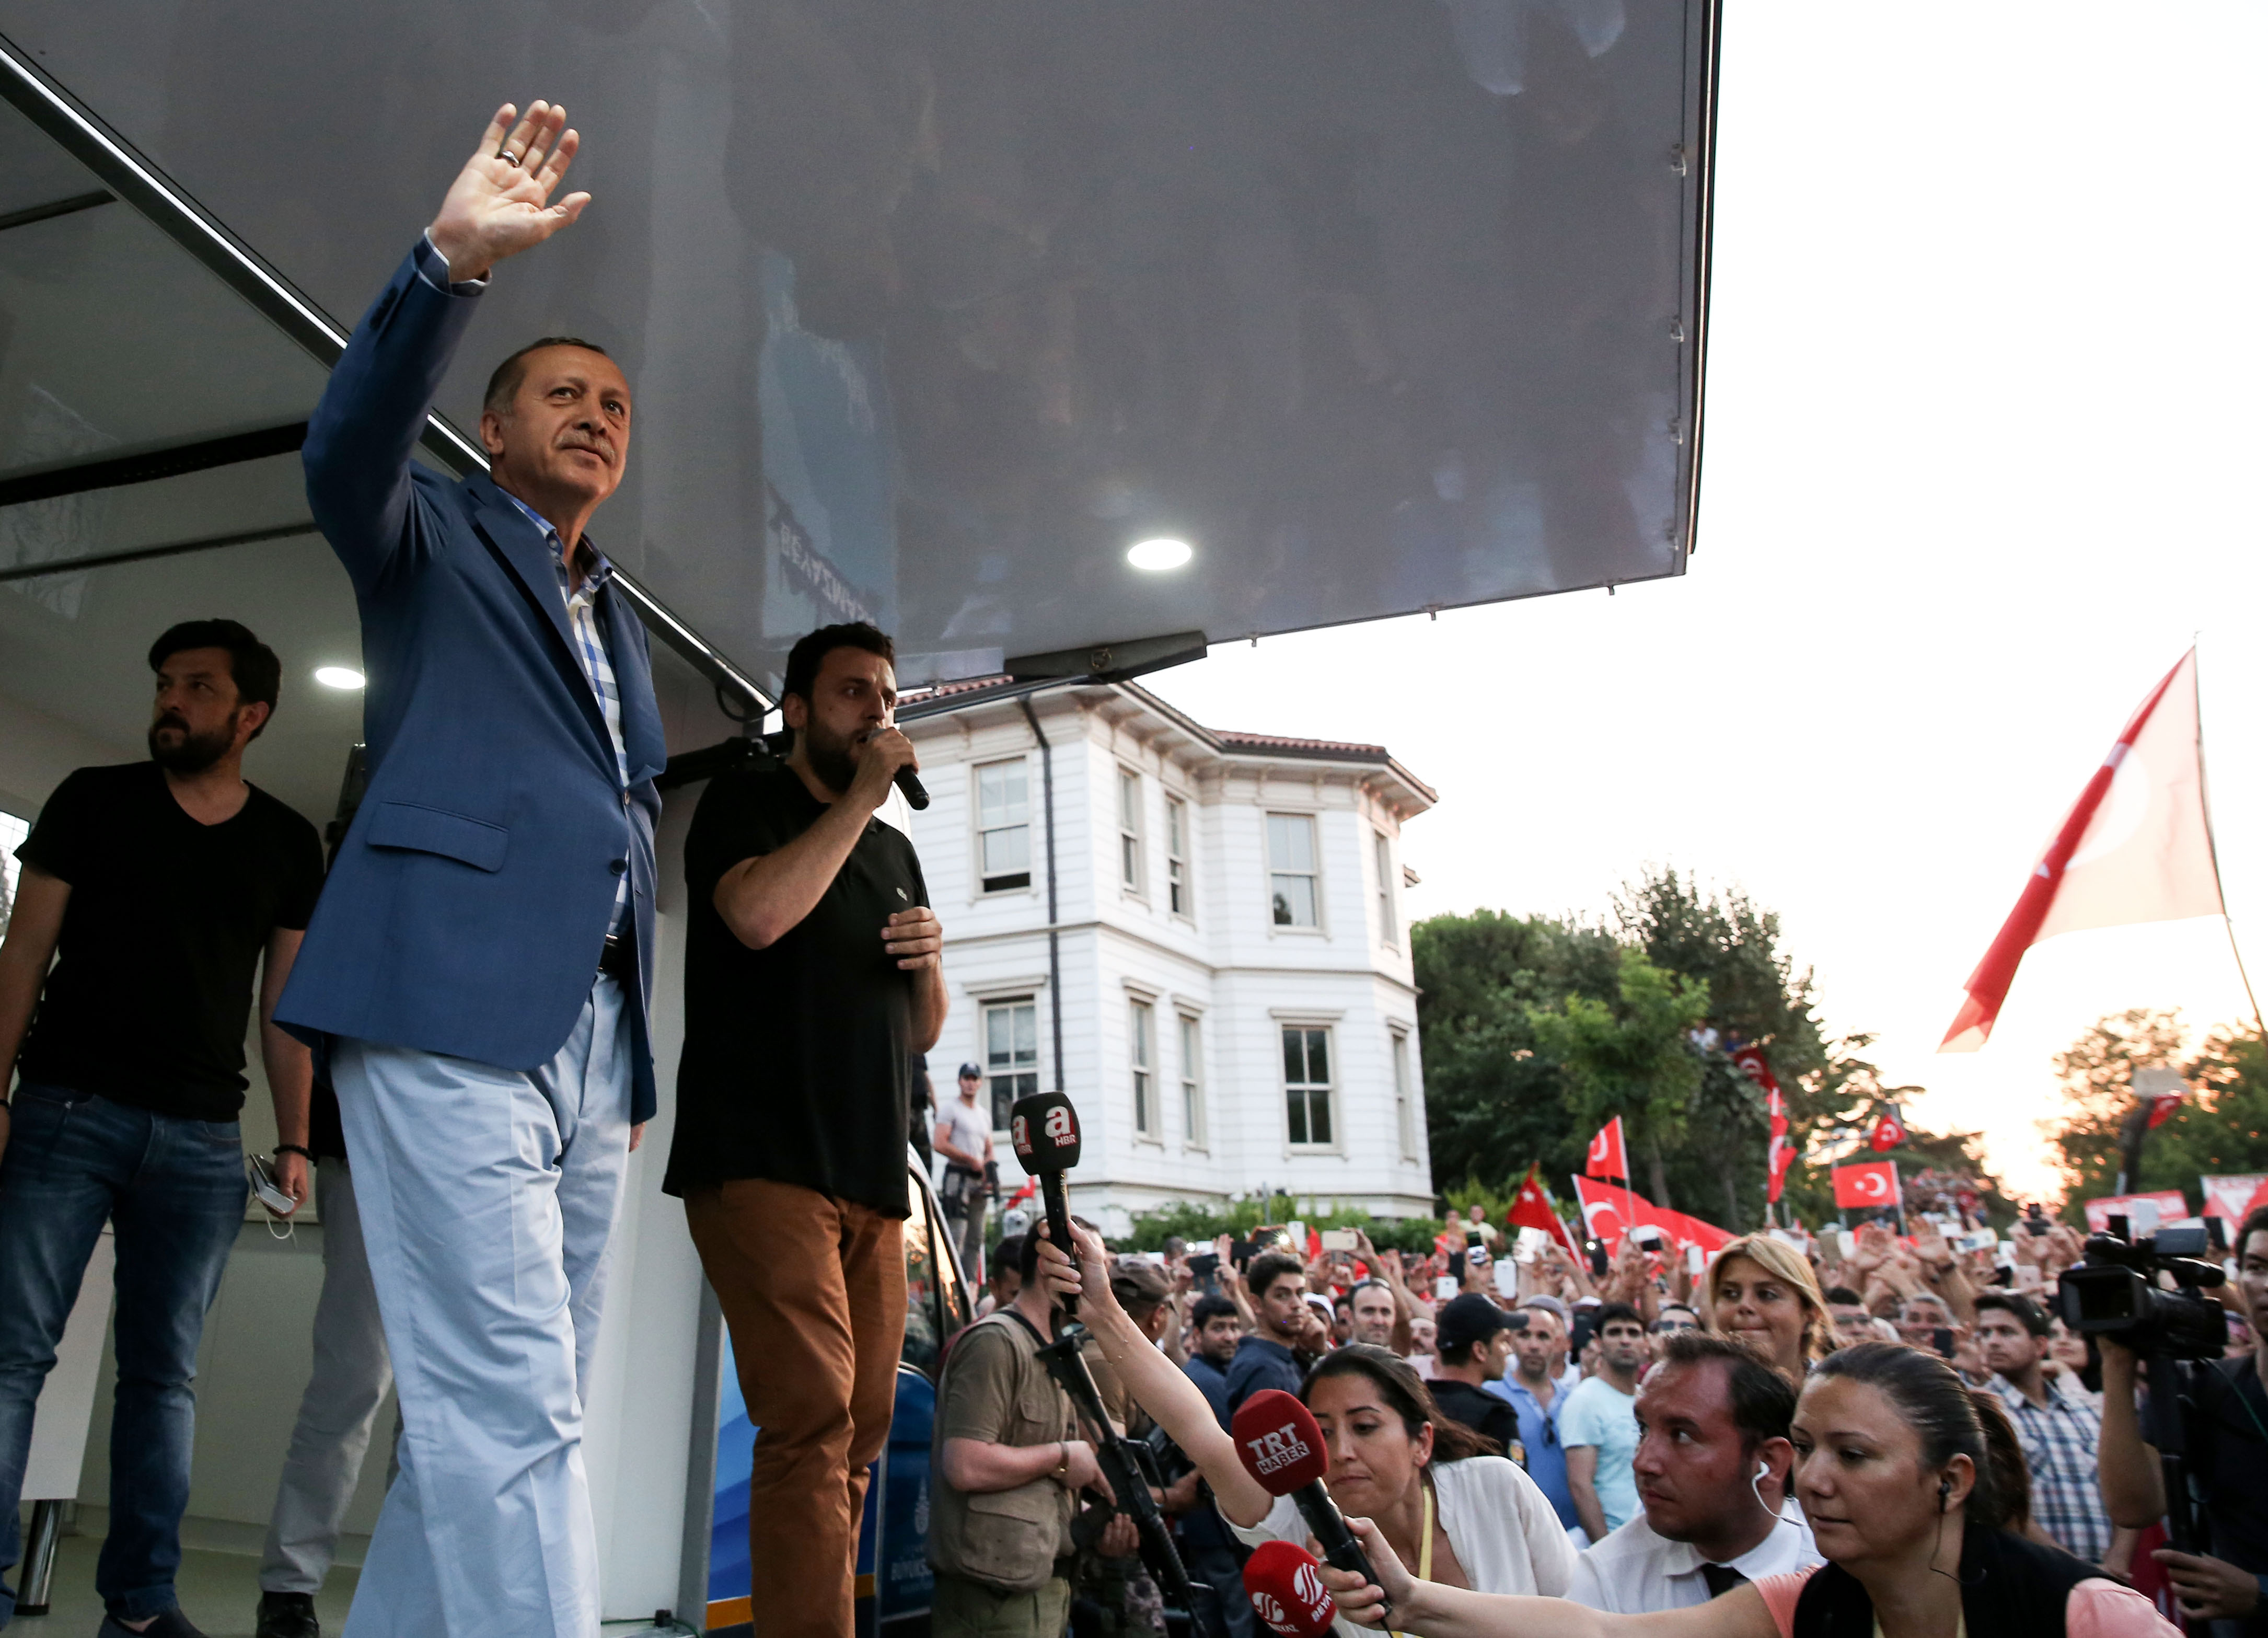 Cumhurbaşkanı Erdoğan, bölücü terör örgütü FETÖ mensuplarının darbe girişimine tepki  göstermek amacıyla Üsküdar Kısıklı'da toplanan vatandaşlara seslendi.